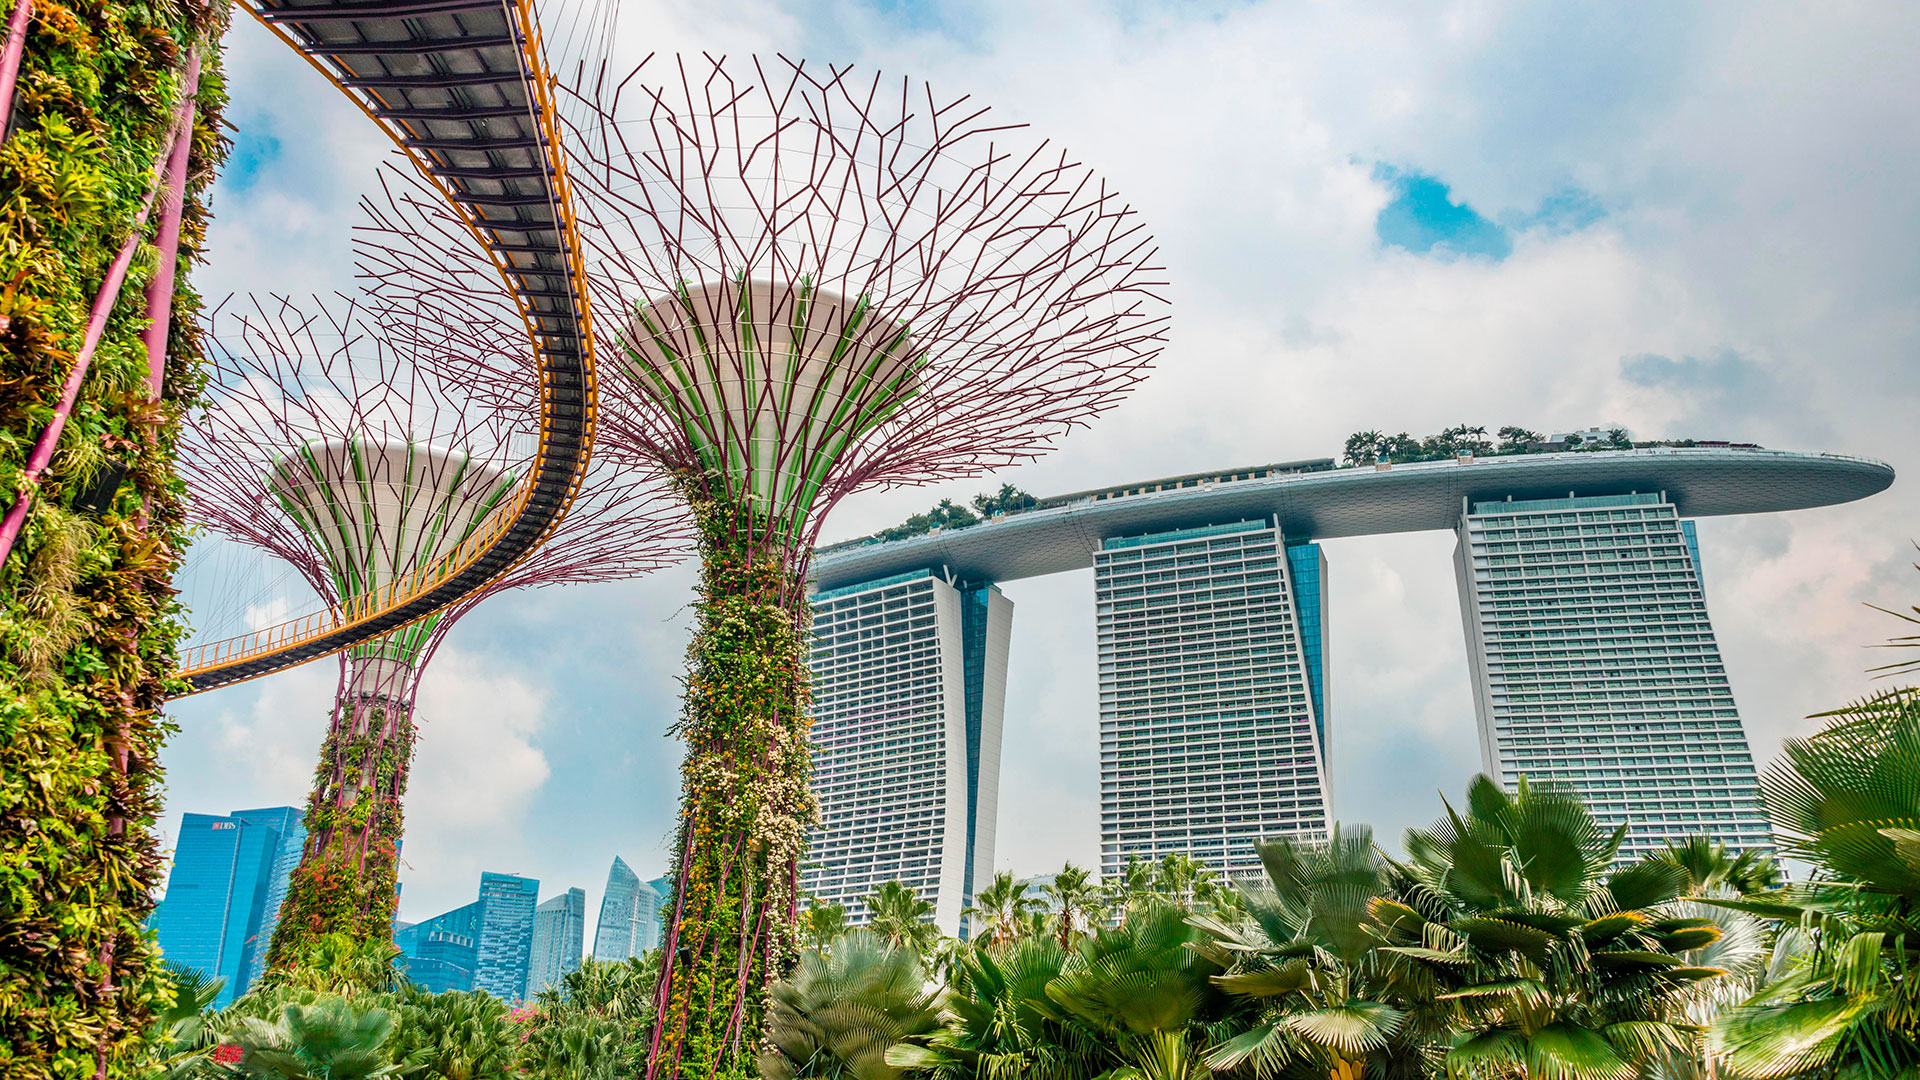 Singapur desciende hasta el cuarto lugar y se coloca con un WCOL de 102. “Los precios en Singapur cayeron cuando la pandemia provocó un éxodo de trabajadores extranjeros. Con la contracción de la población de la ciudad, la demanda ha disminuido y la deflación ha comenzado”, explica el informe 